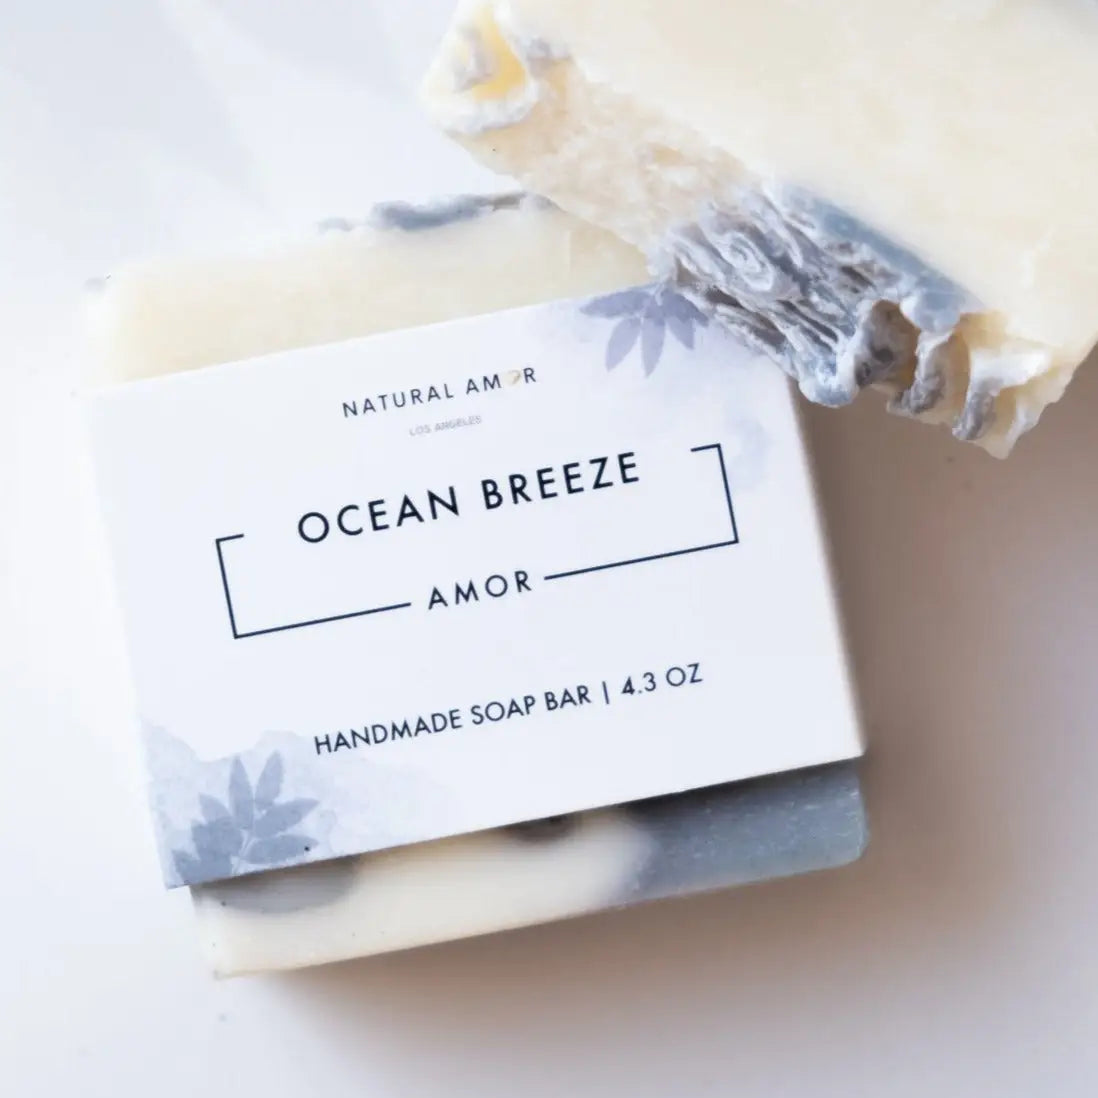 Ocean Breeze Natural Bar Soap